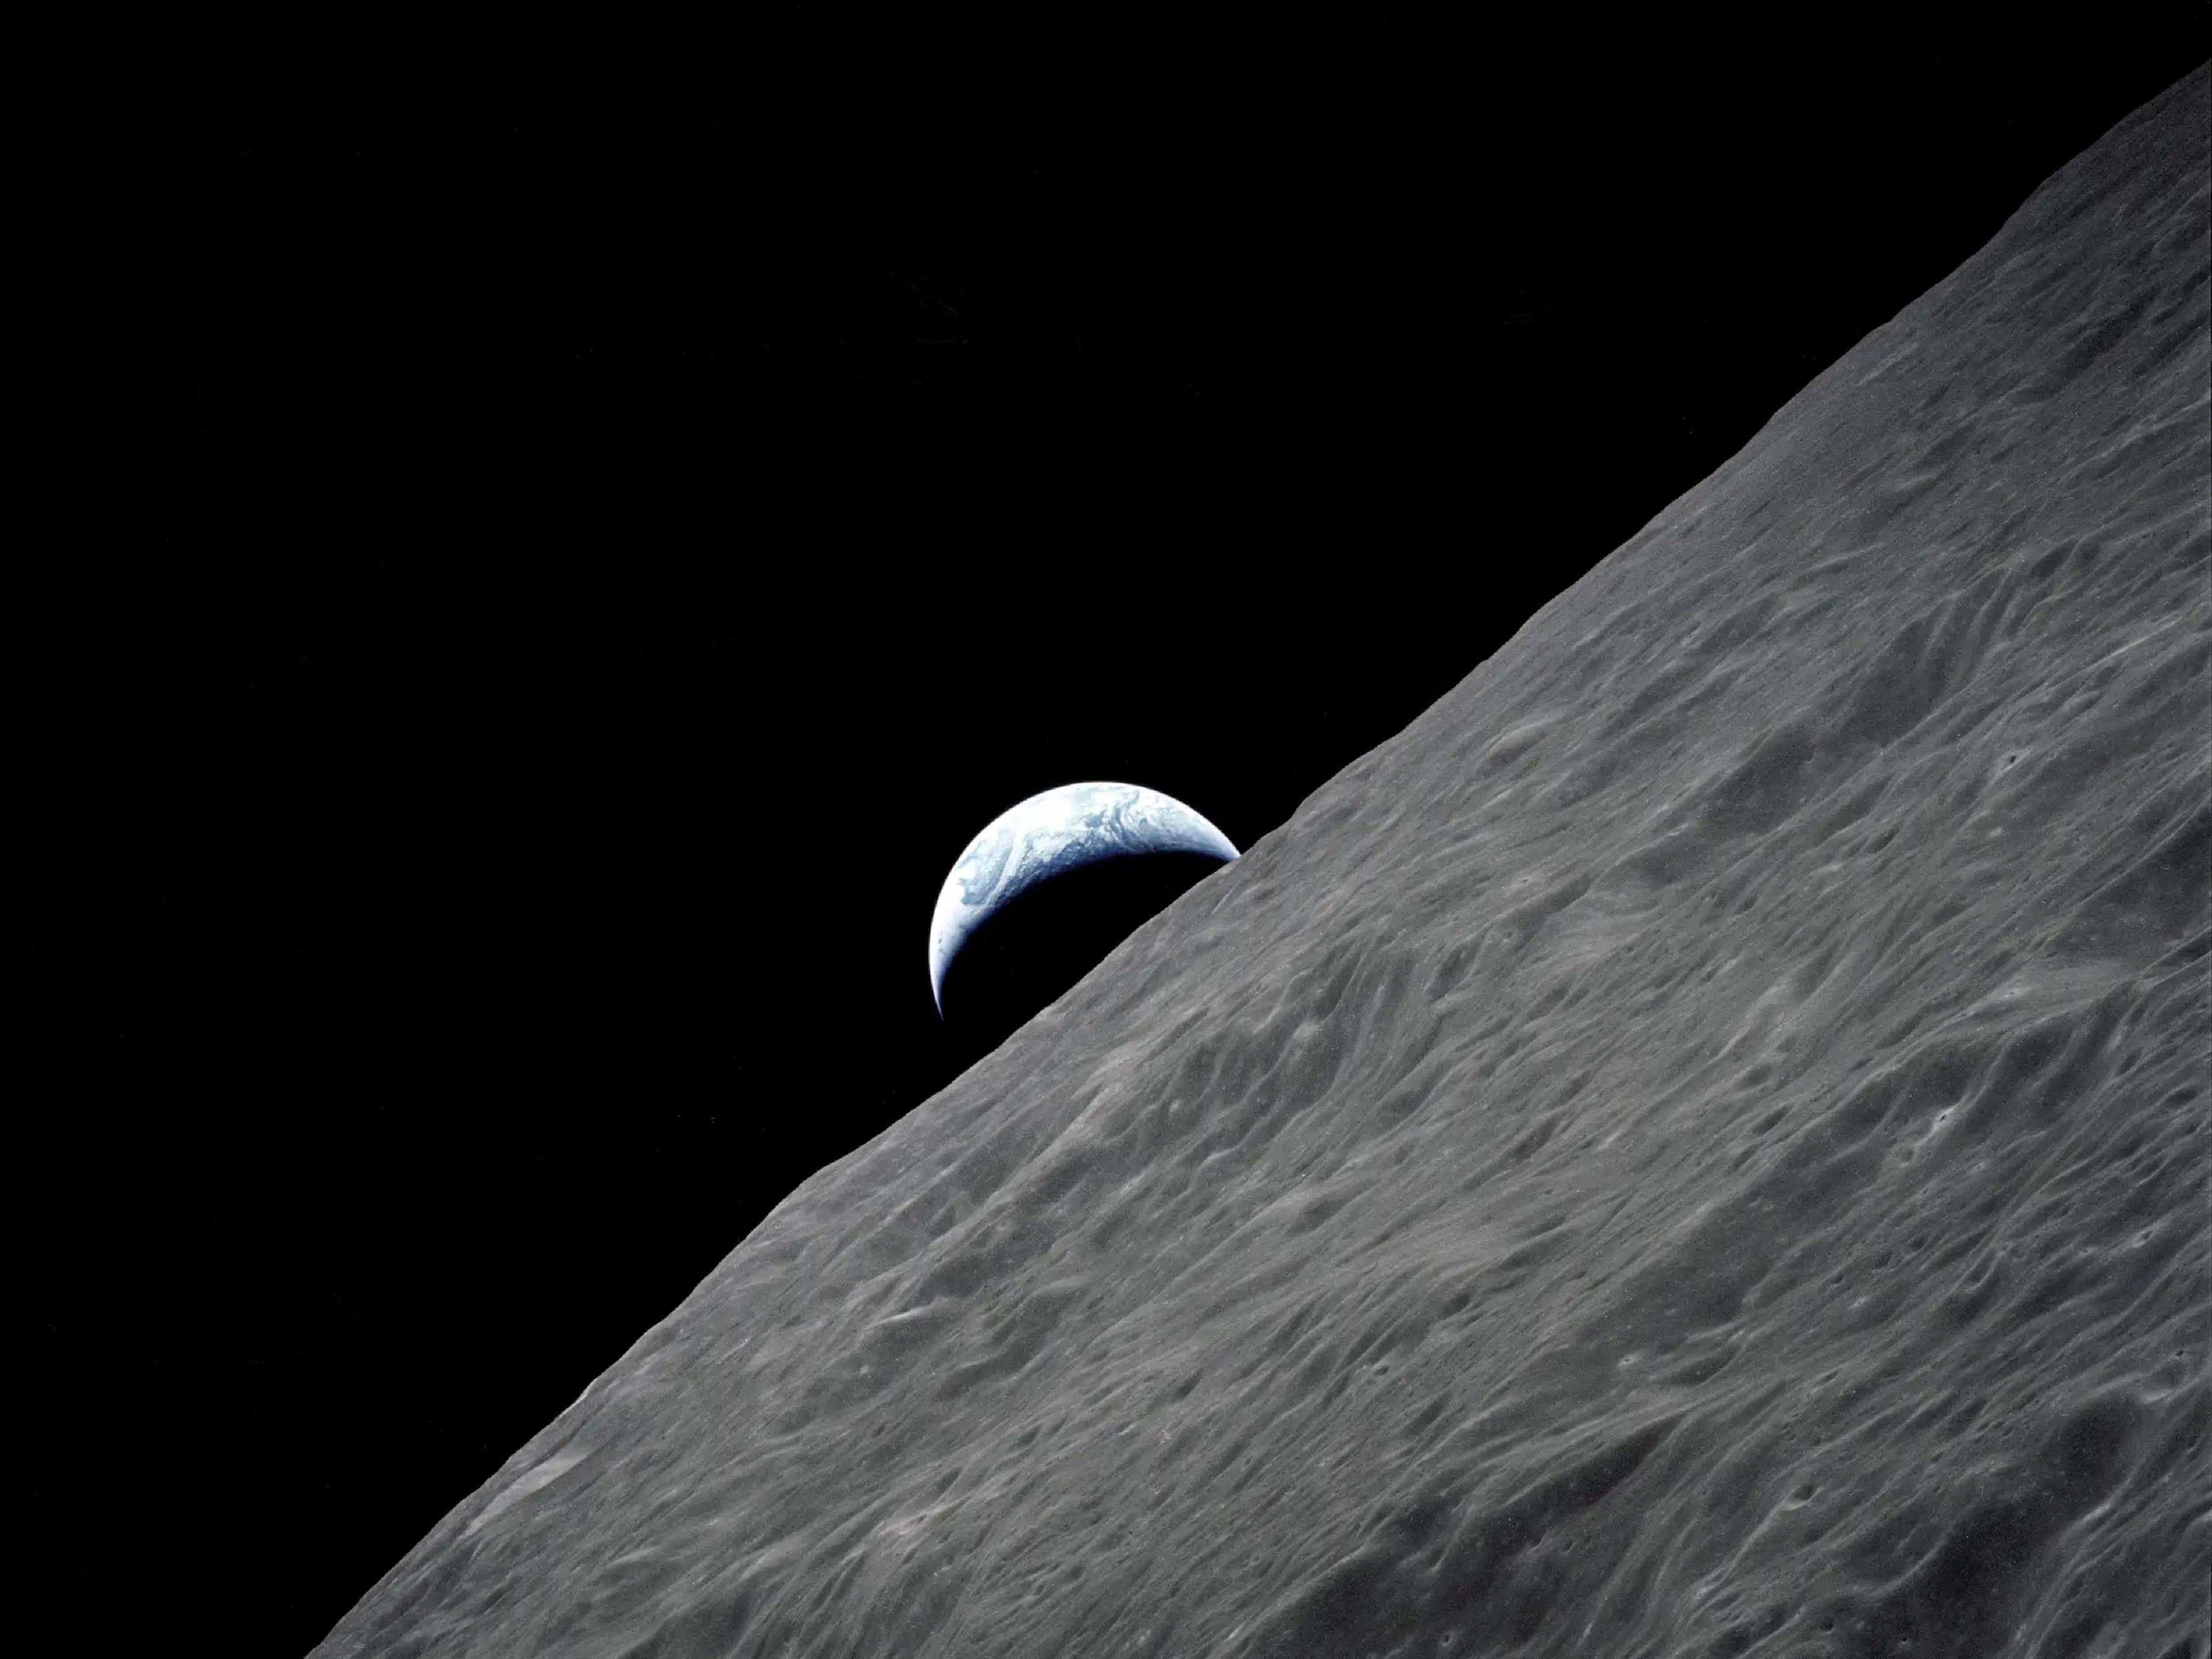 La Tierra en cuarto creciente se ve sobre el horizonte lunar en esta fotografía tomada desde la nave Apolo 17 (1972).